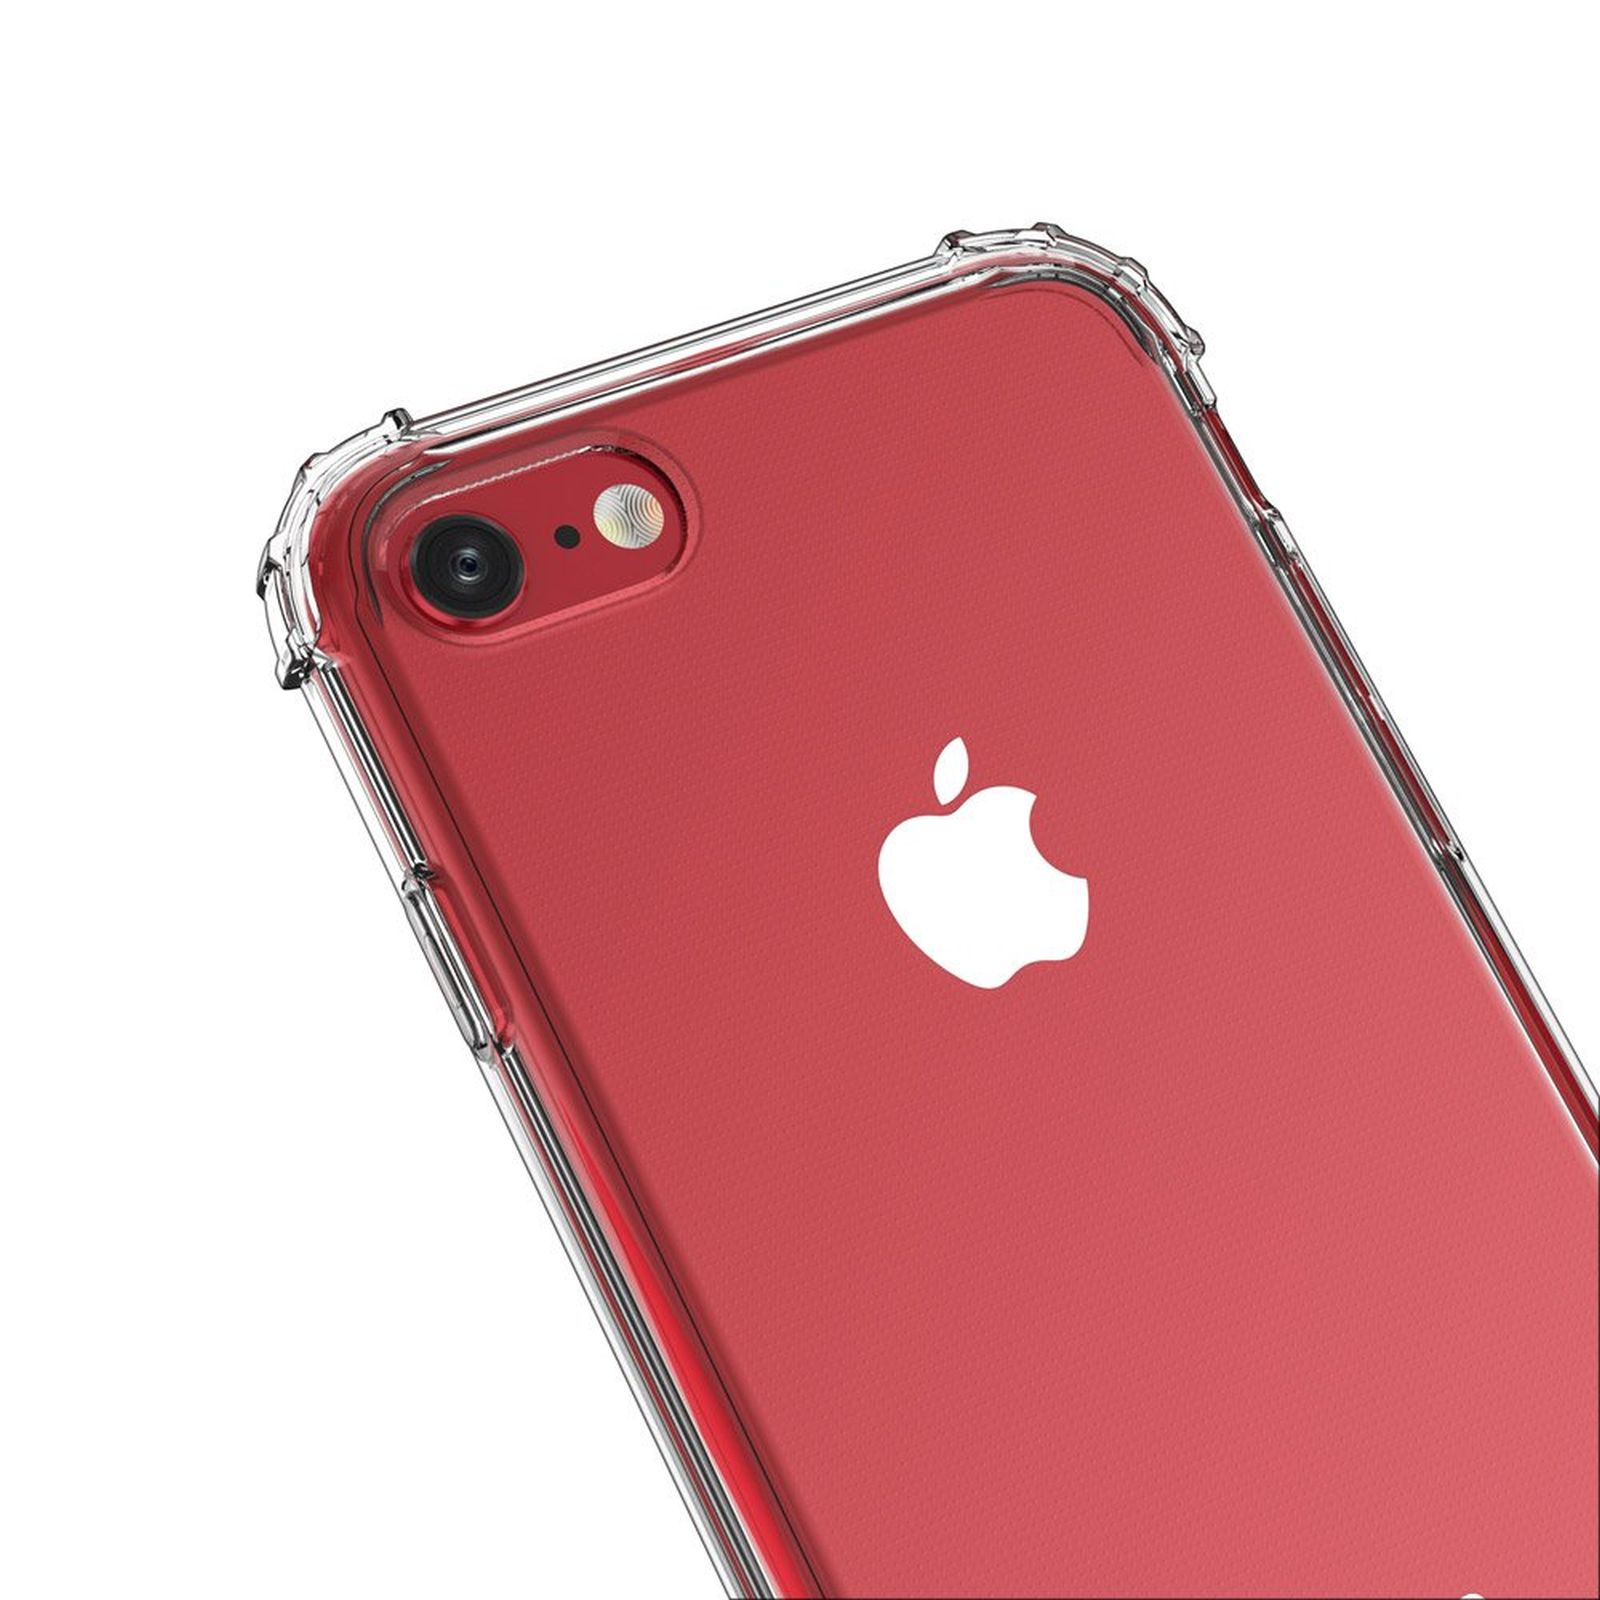 Apple, Transparent Armor iPhone WOZINSKY Bumper, Roar 8, Case,